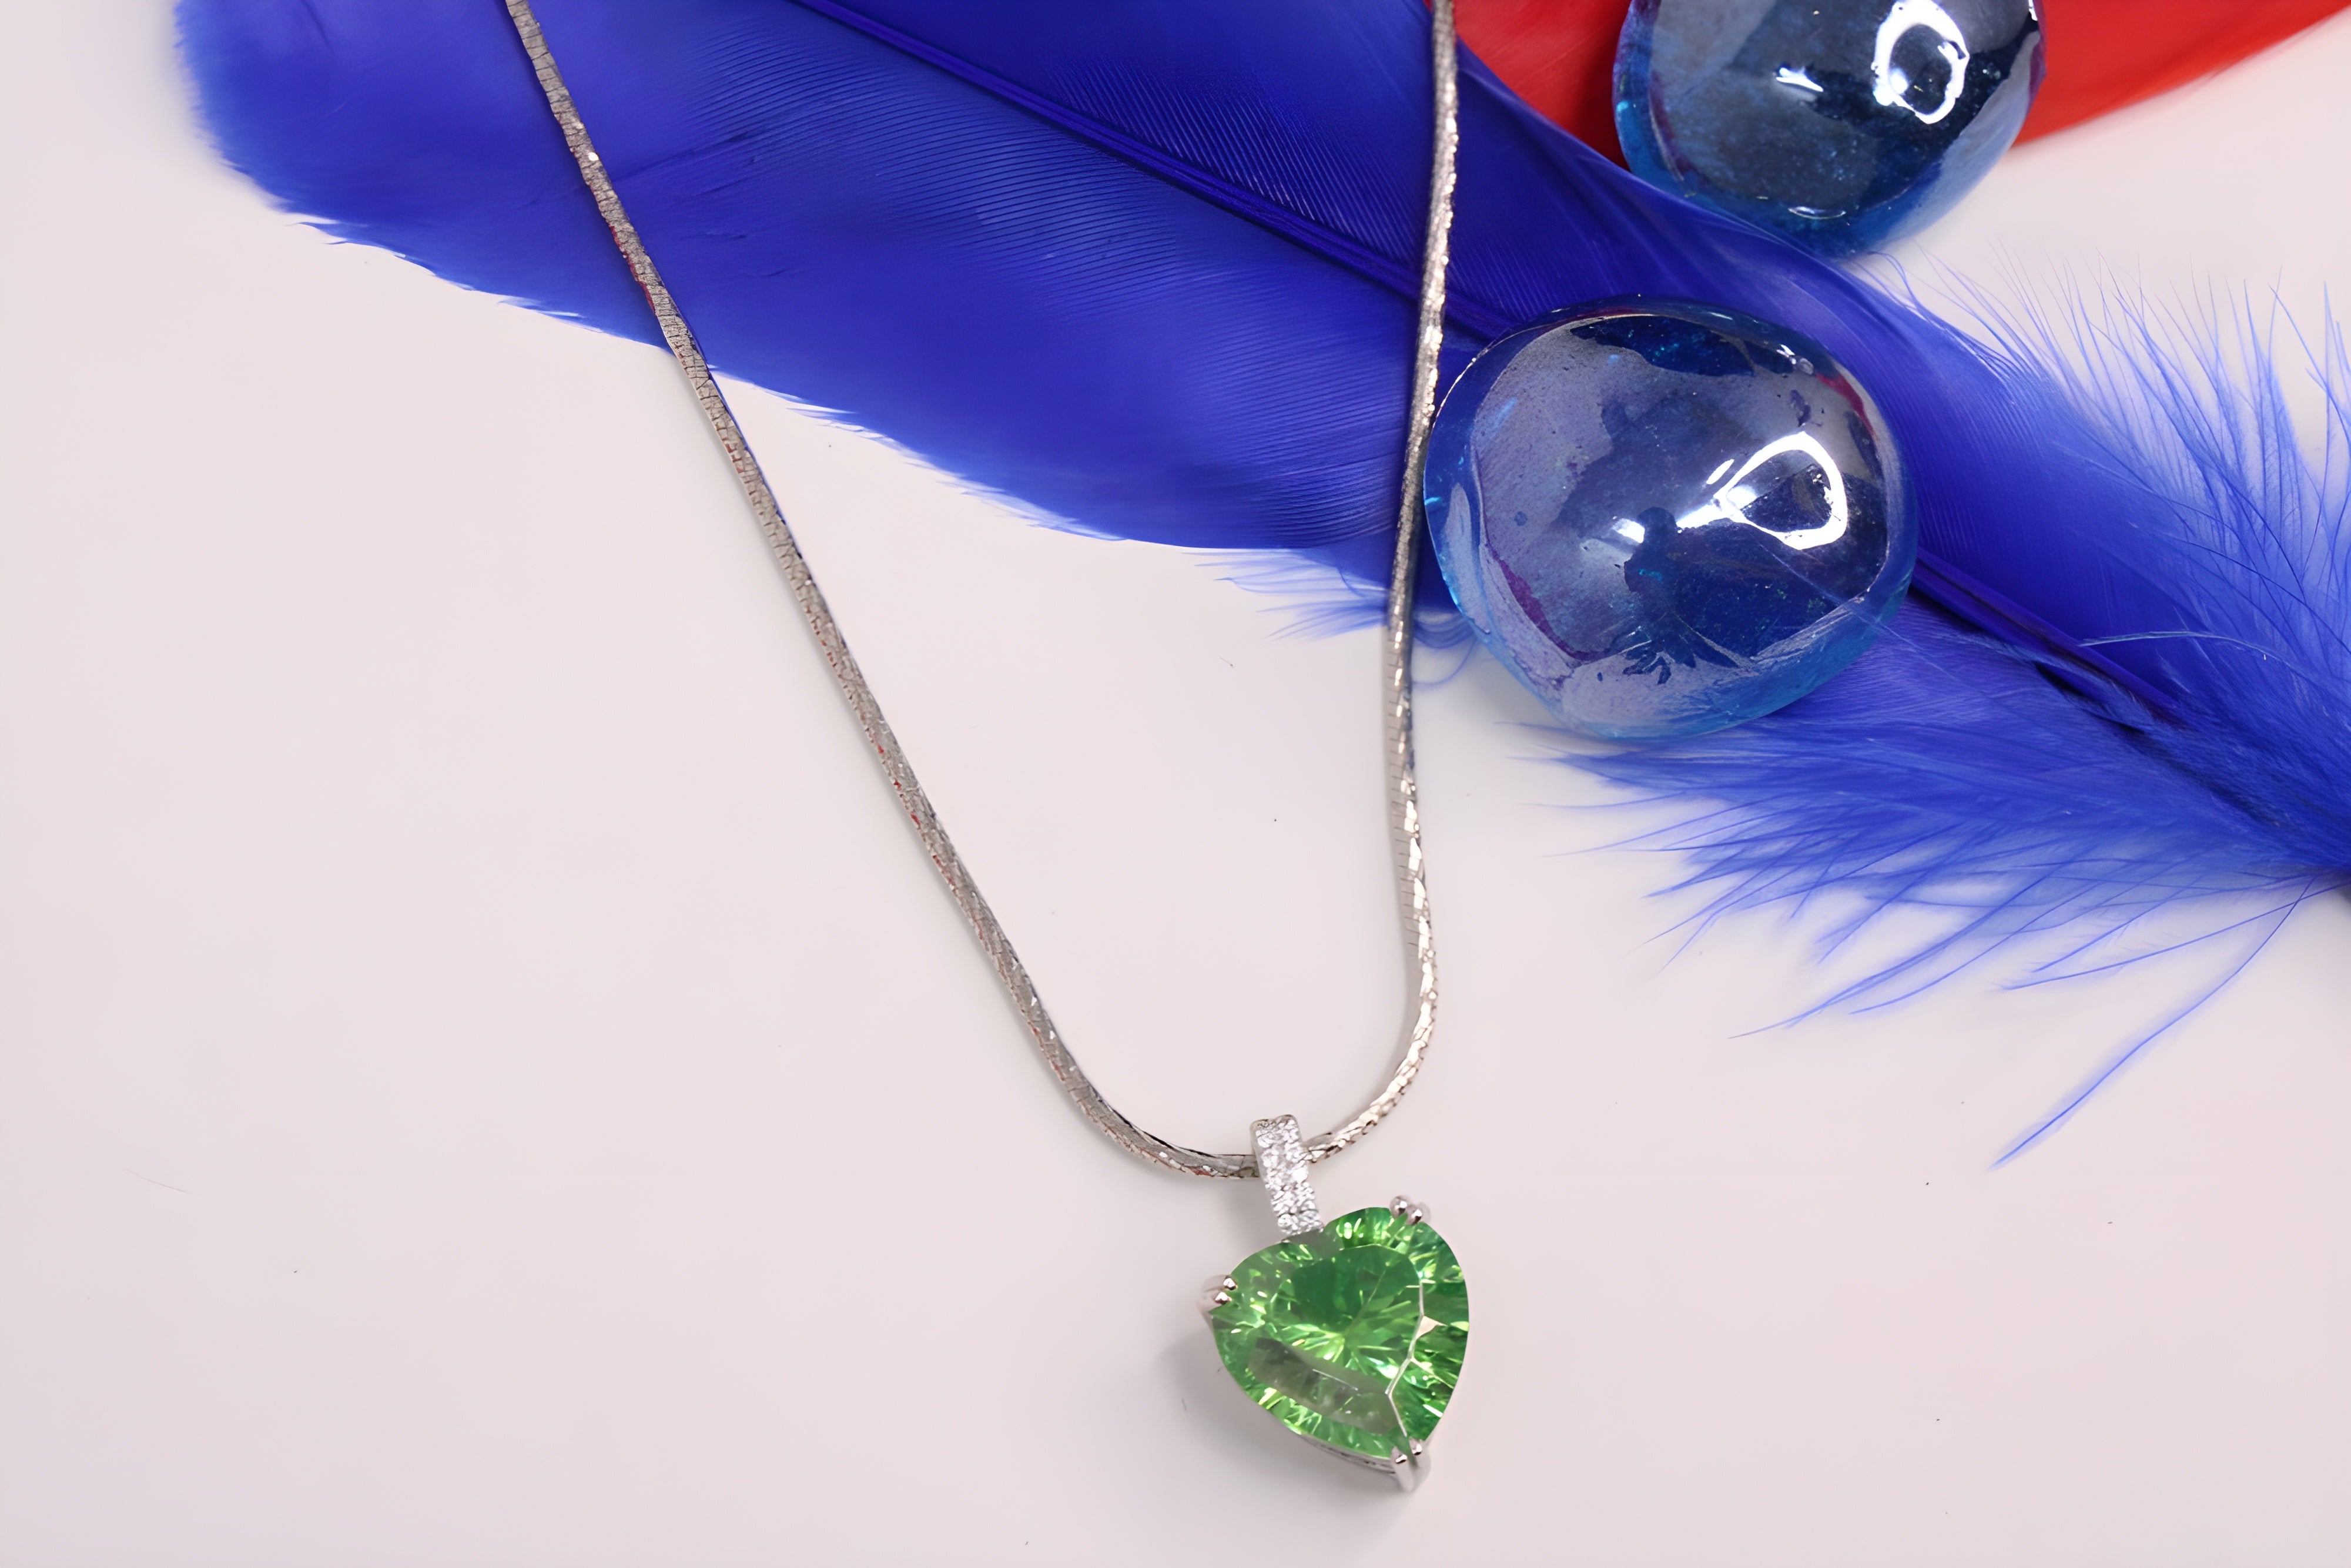 Enchanted Emerald Heart Pendant